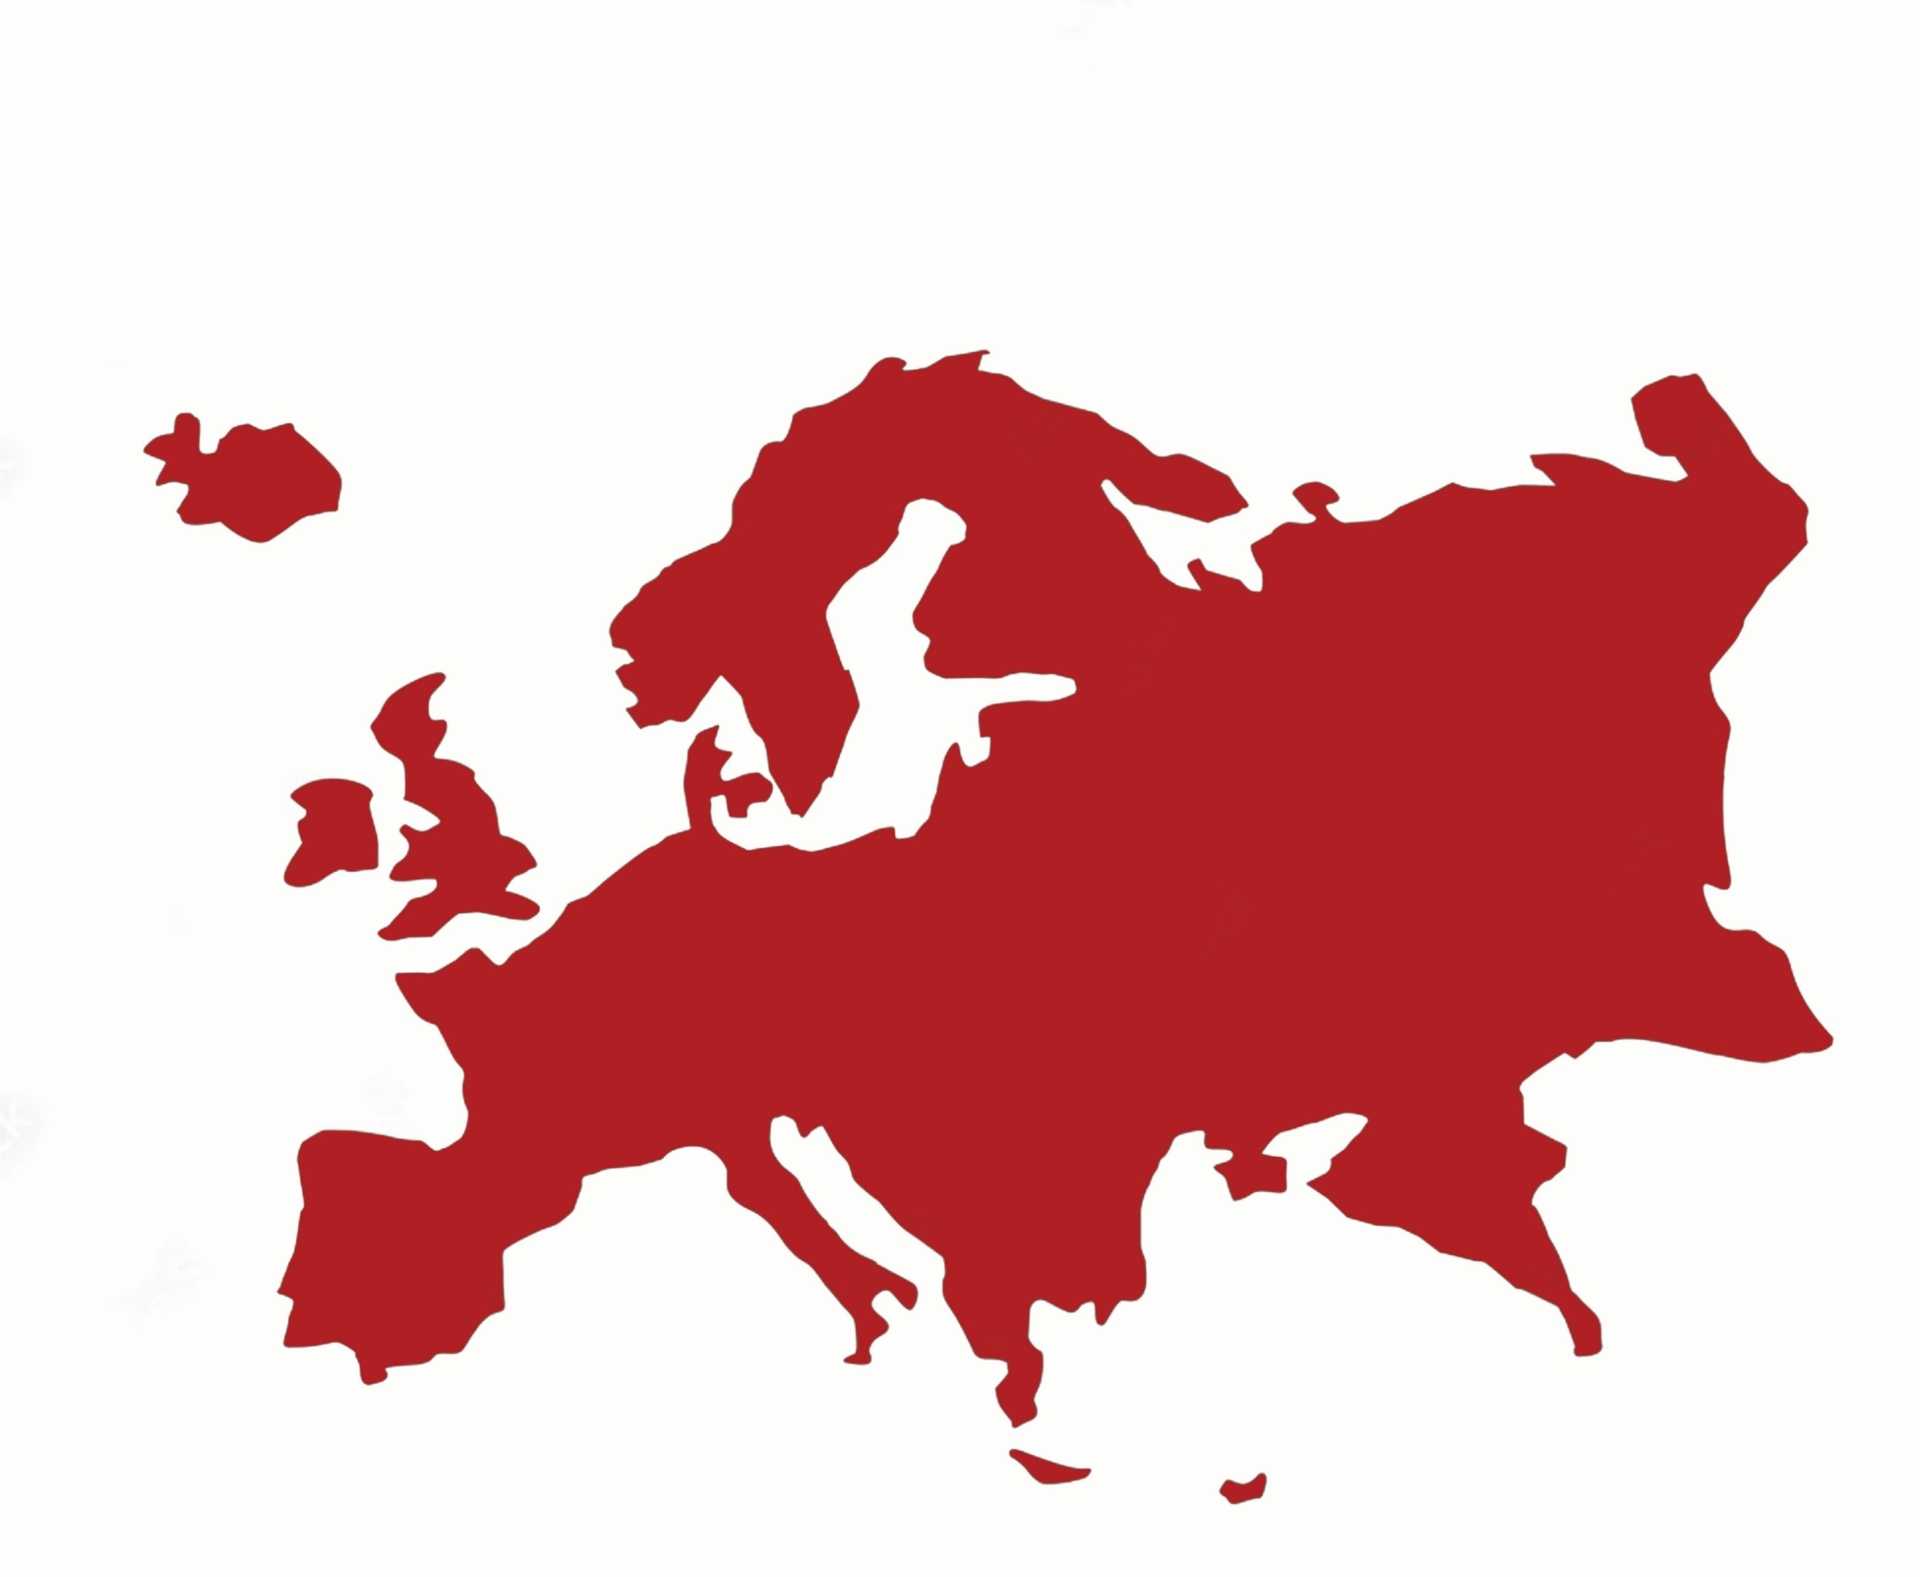 نقشه اروپا scaled قوانین کلی اروپا